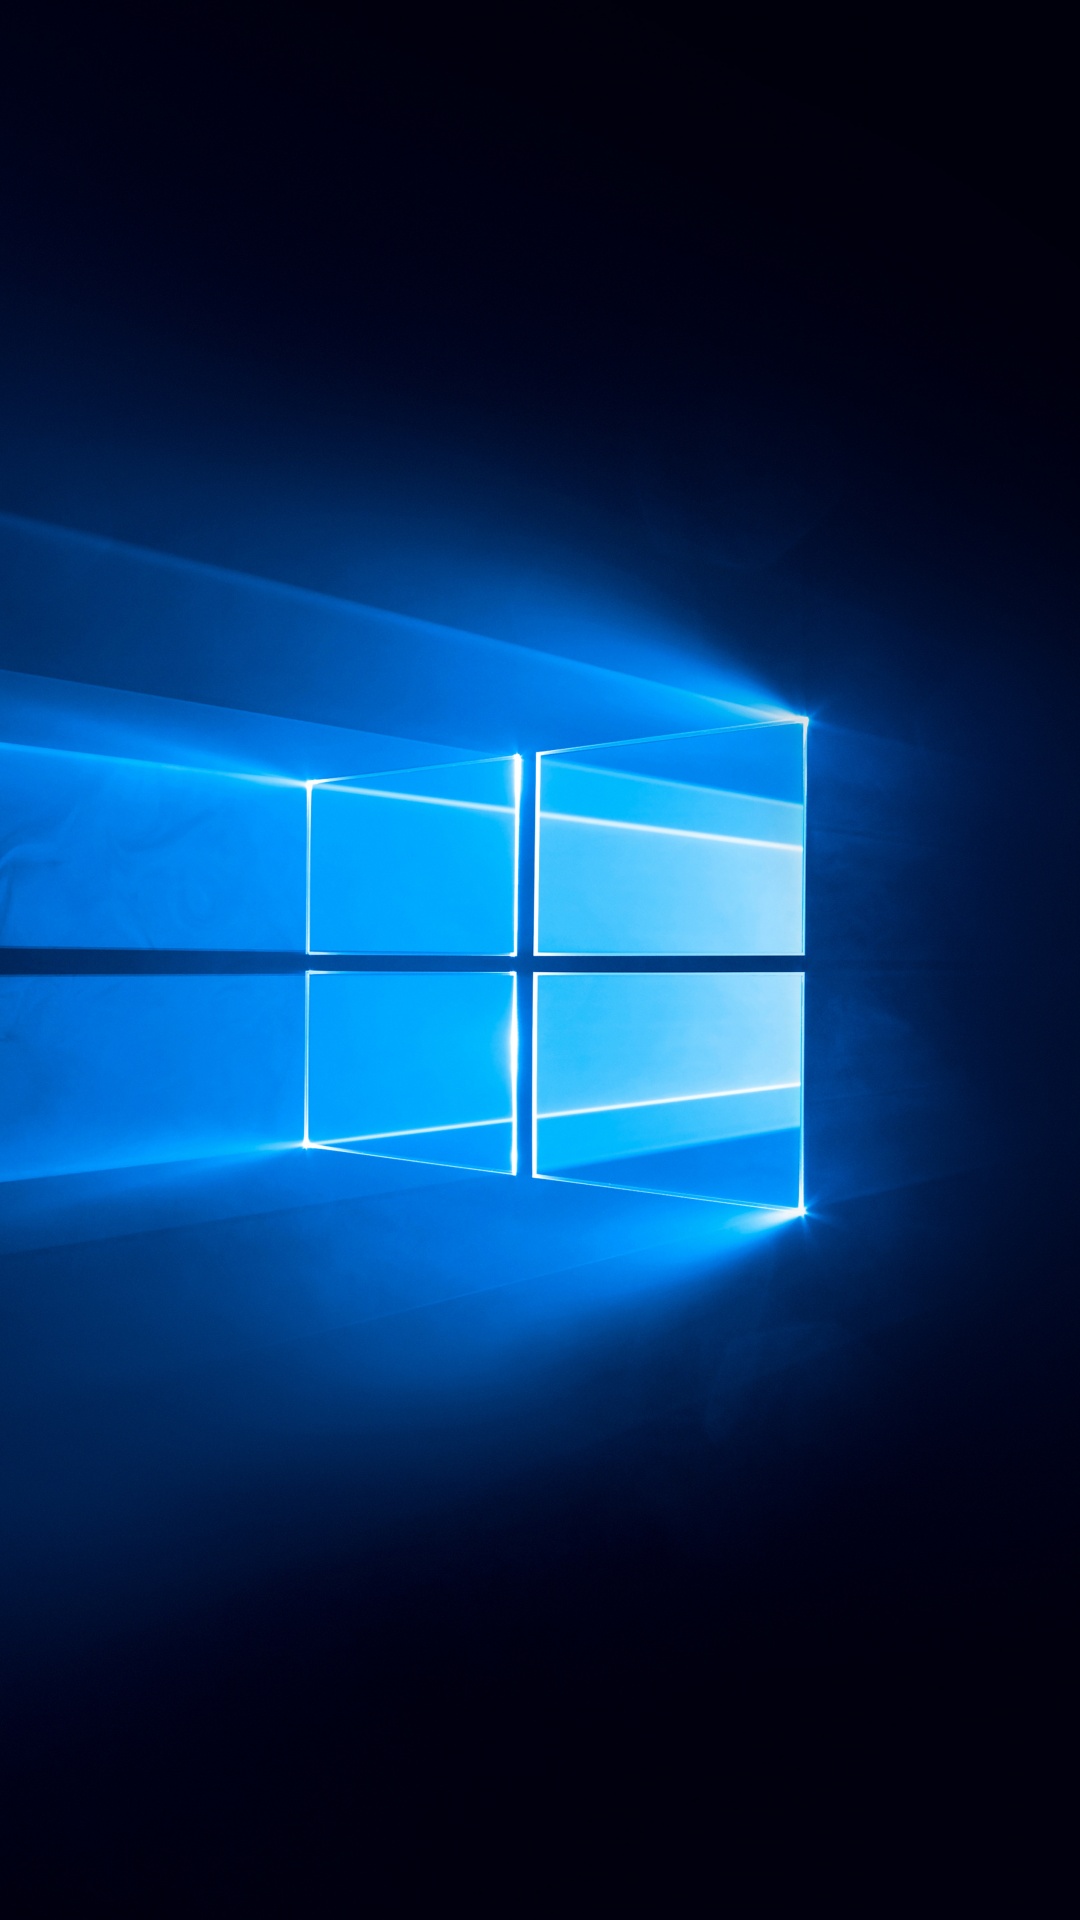 Khám phá vẻ đẹp của công nghệ với hình nền Windows 10 đen xanh 4K đầy ấn tượng. Tận hưởng màn hình độ phân giải cao cùng hiệu ứng ánh sáng chói lọi, làm cho bất kỳ thiết bị của bạn trở nên đẹp mắt hơn. Nhấn vào hình để tải về và lựa chọn cho mình một bức hình nền hoàn hảo nhất.